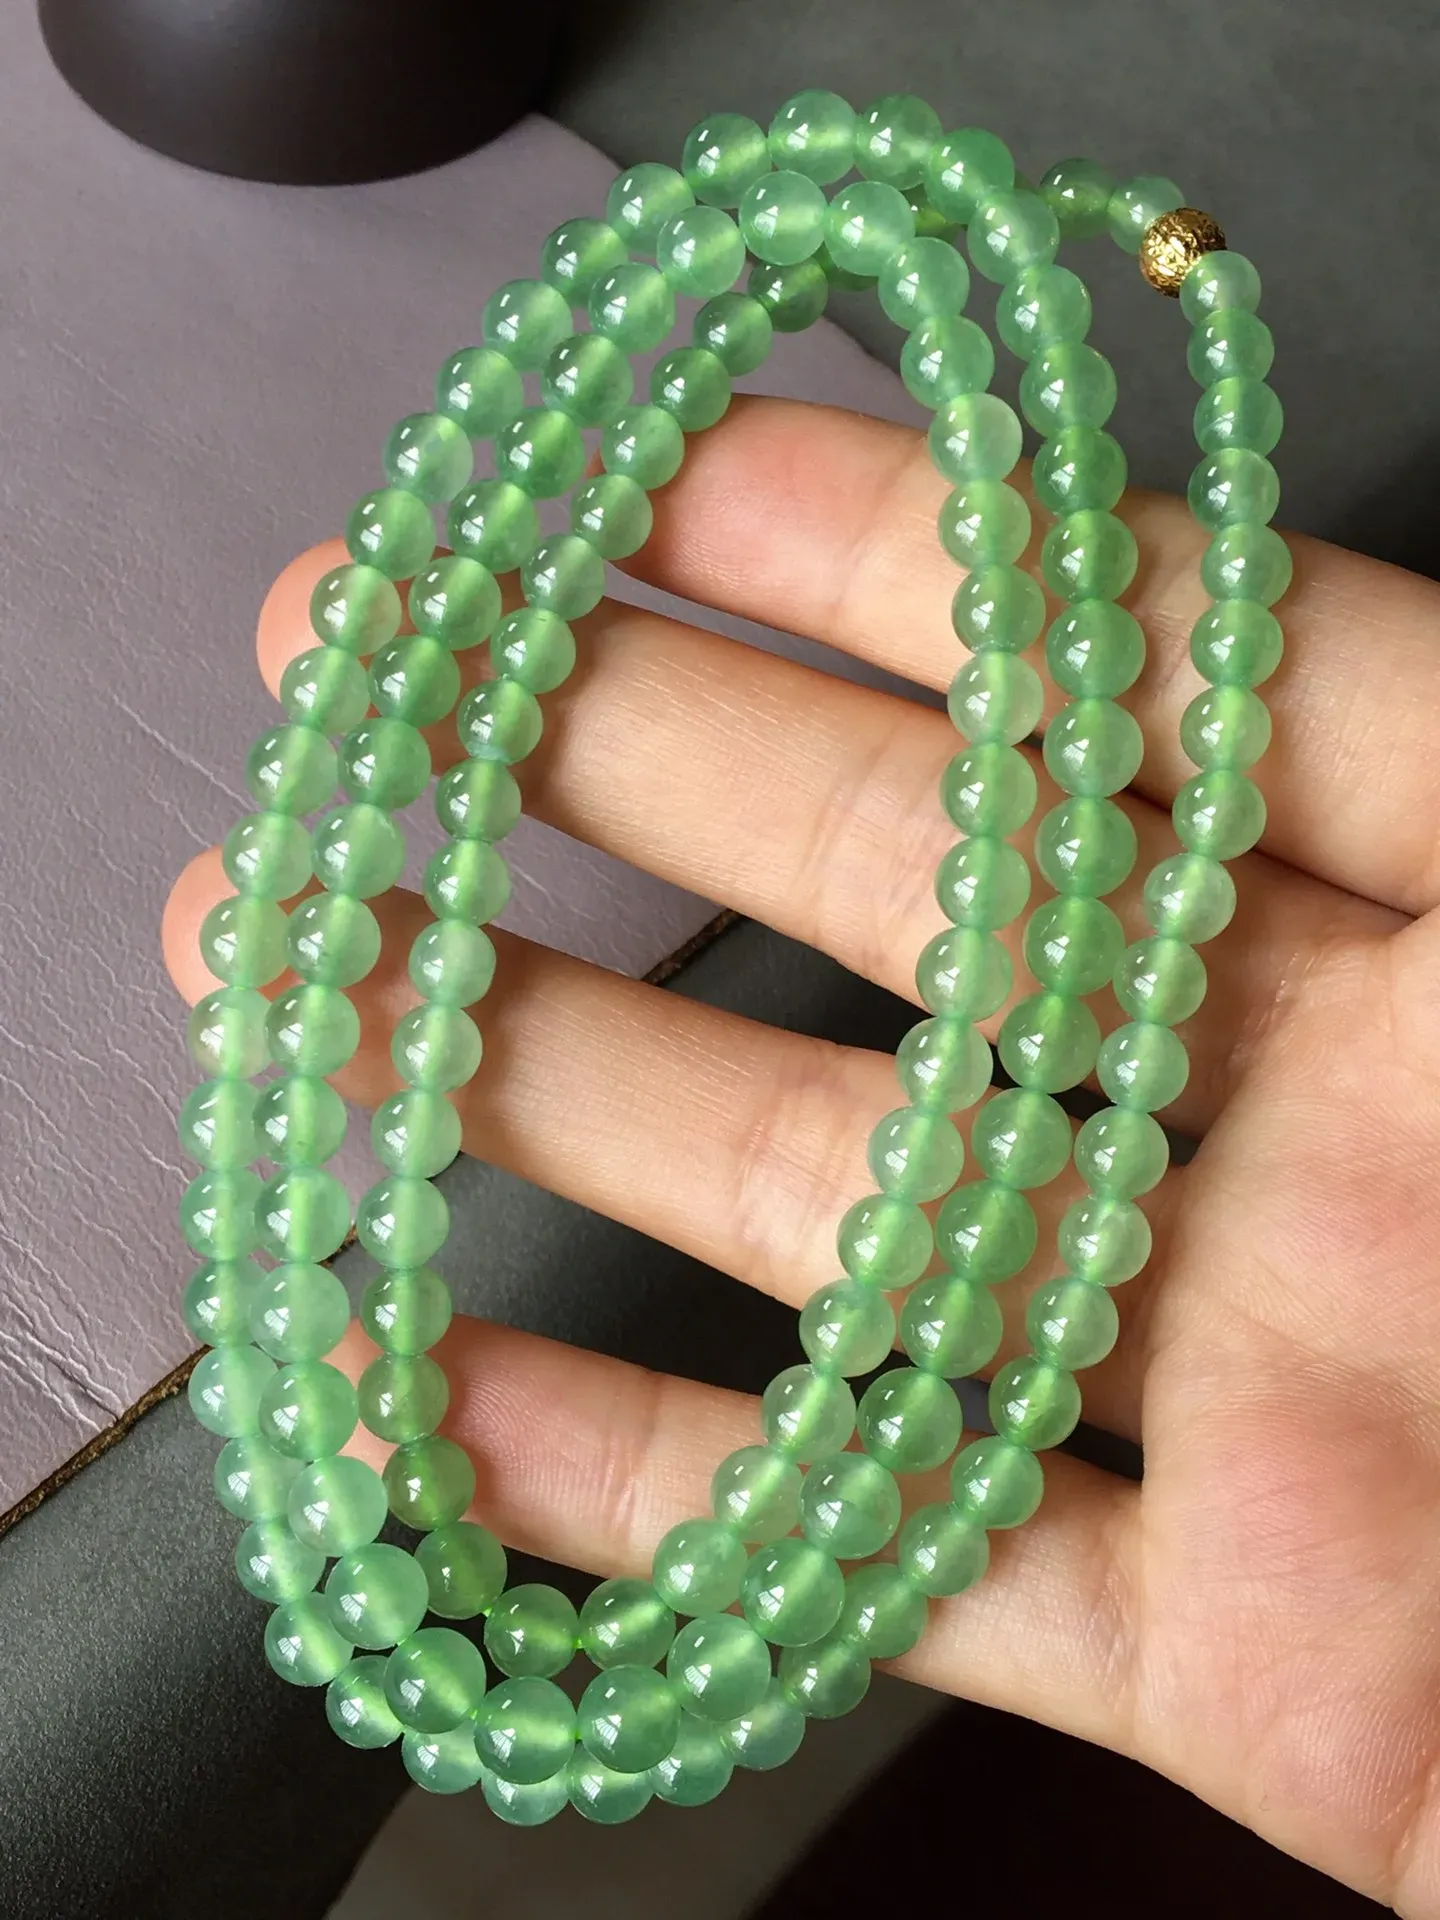 冰晴绿珠链，饱满无裂，色泽艳丽，水润细腻，尺寸5.6/4.7-128颗，编号526